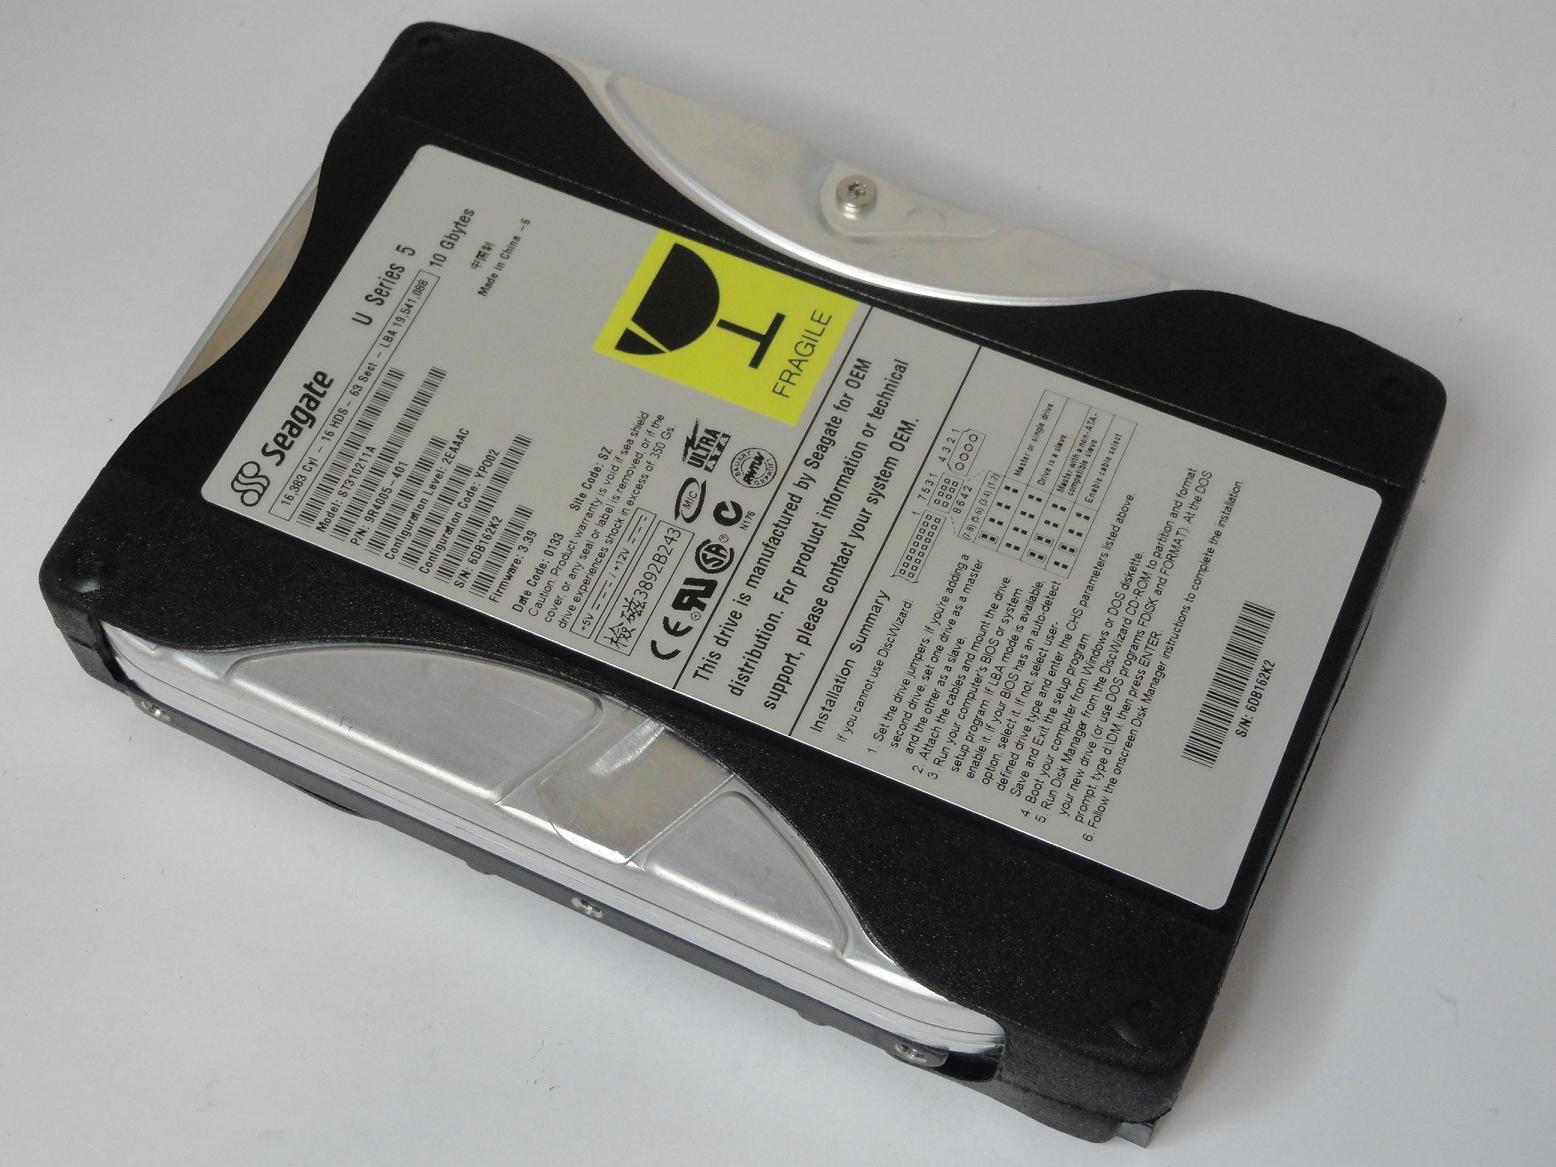 Seagate 10GB IDE 5400rpm 3.5in U Series 5 Hard Disk Drive ( 9R4005-401 ST310211A ) REF